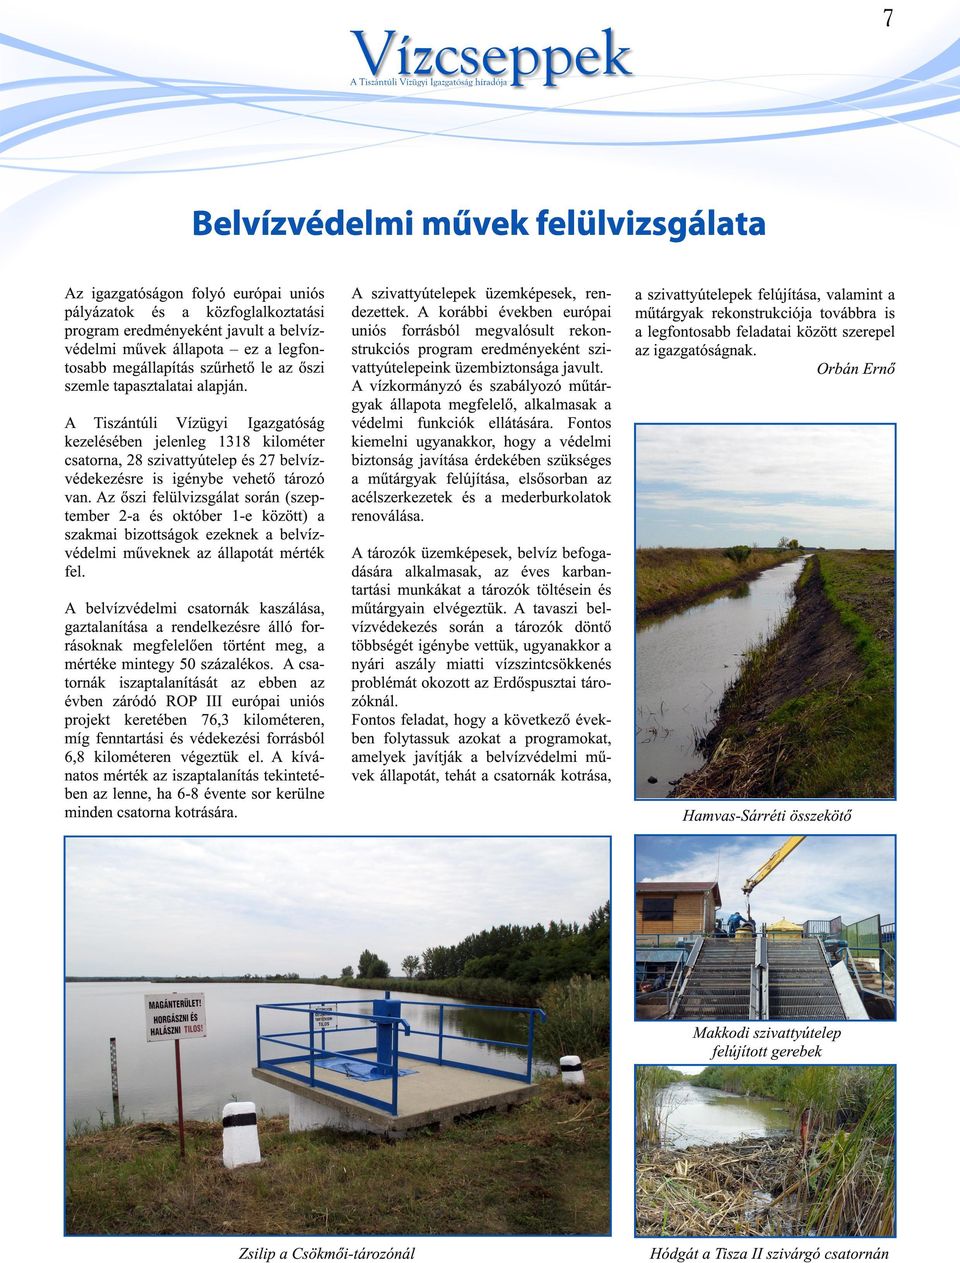 A Tiszántúli Vízügyi Igazgatóság kezelésében jelenleg 1318 kilométer csatorna, 28 szivattyútelep és 27 belvízvédekezésre is igénybe vehető tározó van.